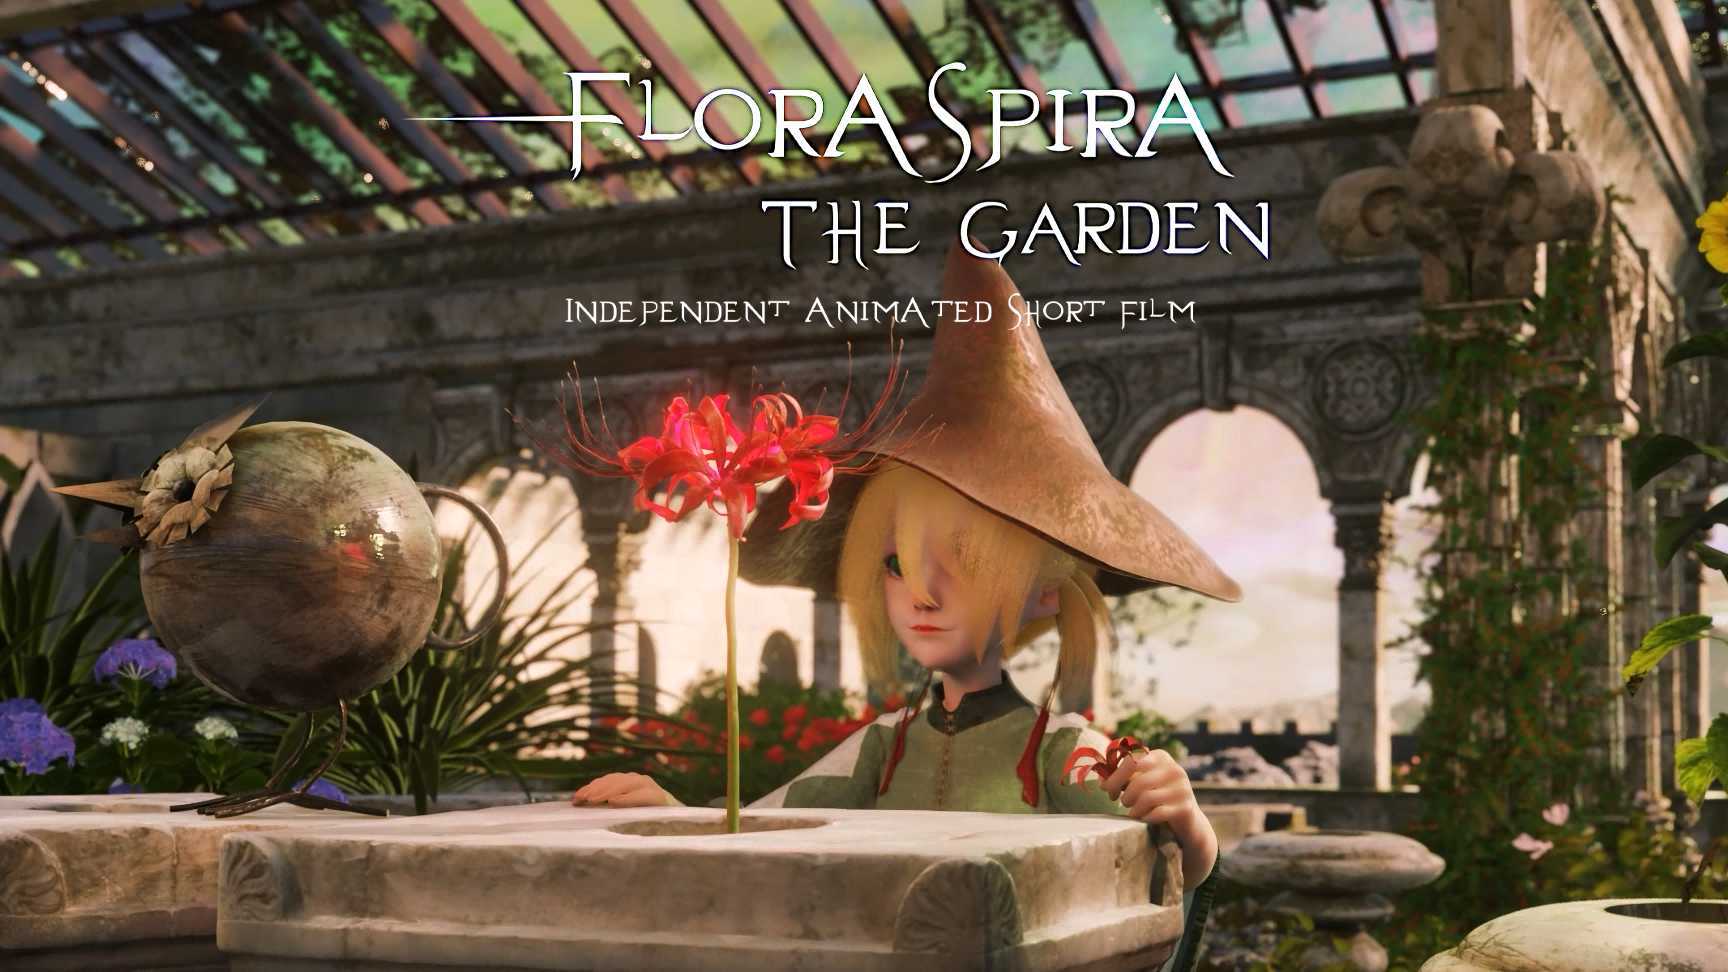 个人毕设动画短片 - Floraspira 花园